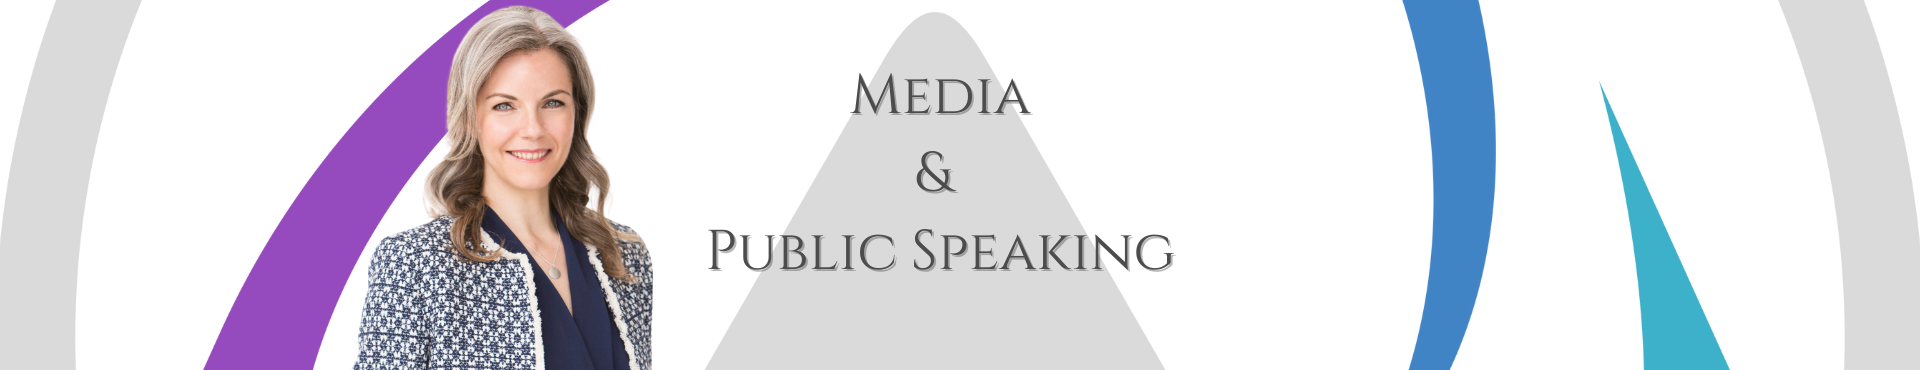 Media & Public Speaking